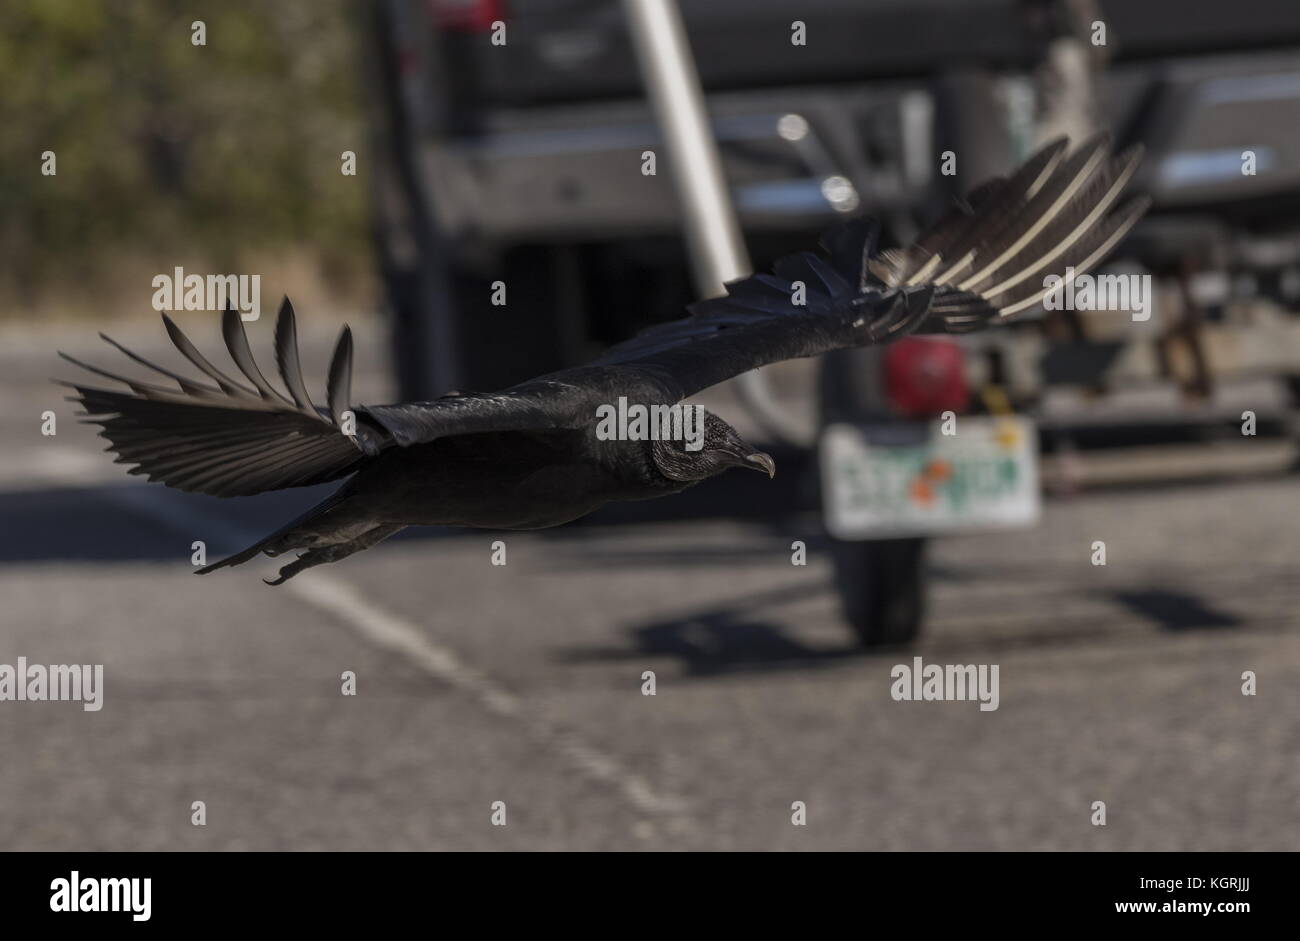 American black vulture, Coragyps atratus in flight in car park, Florida. Stock Photo